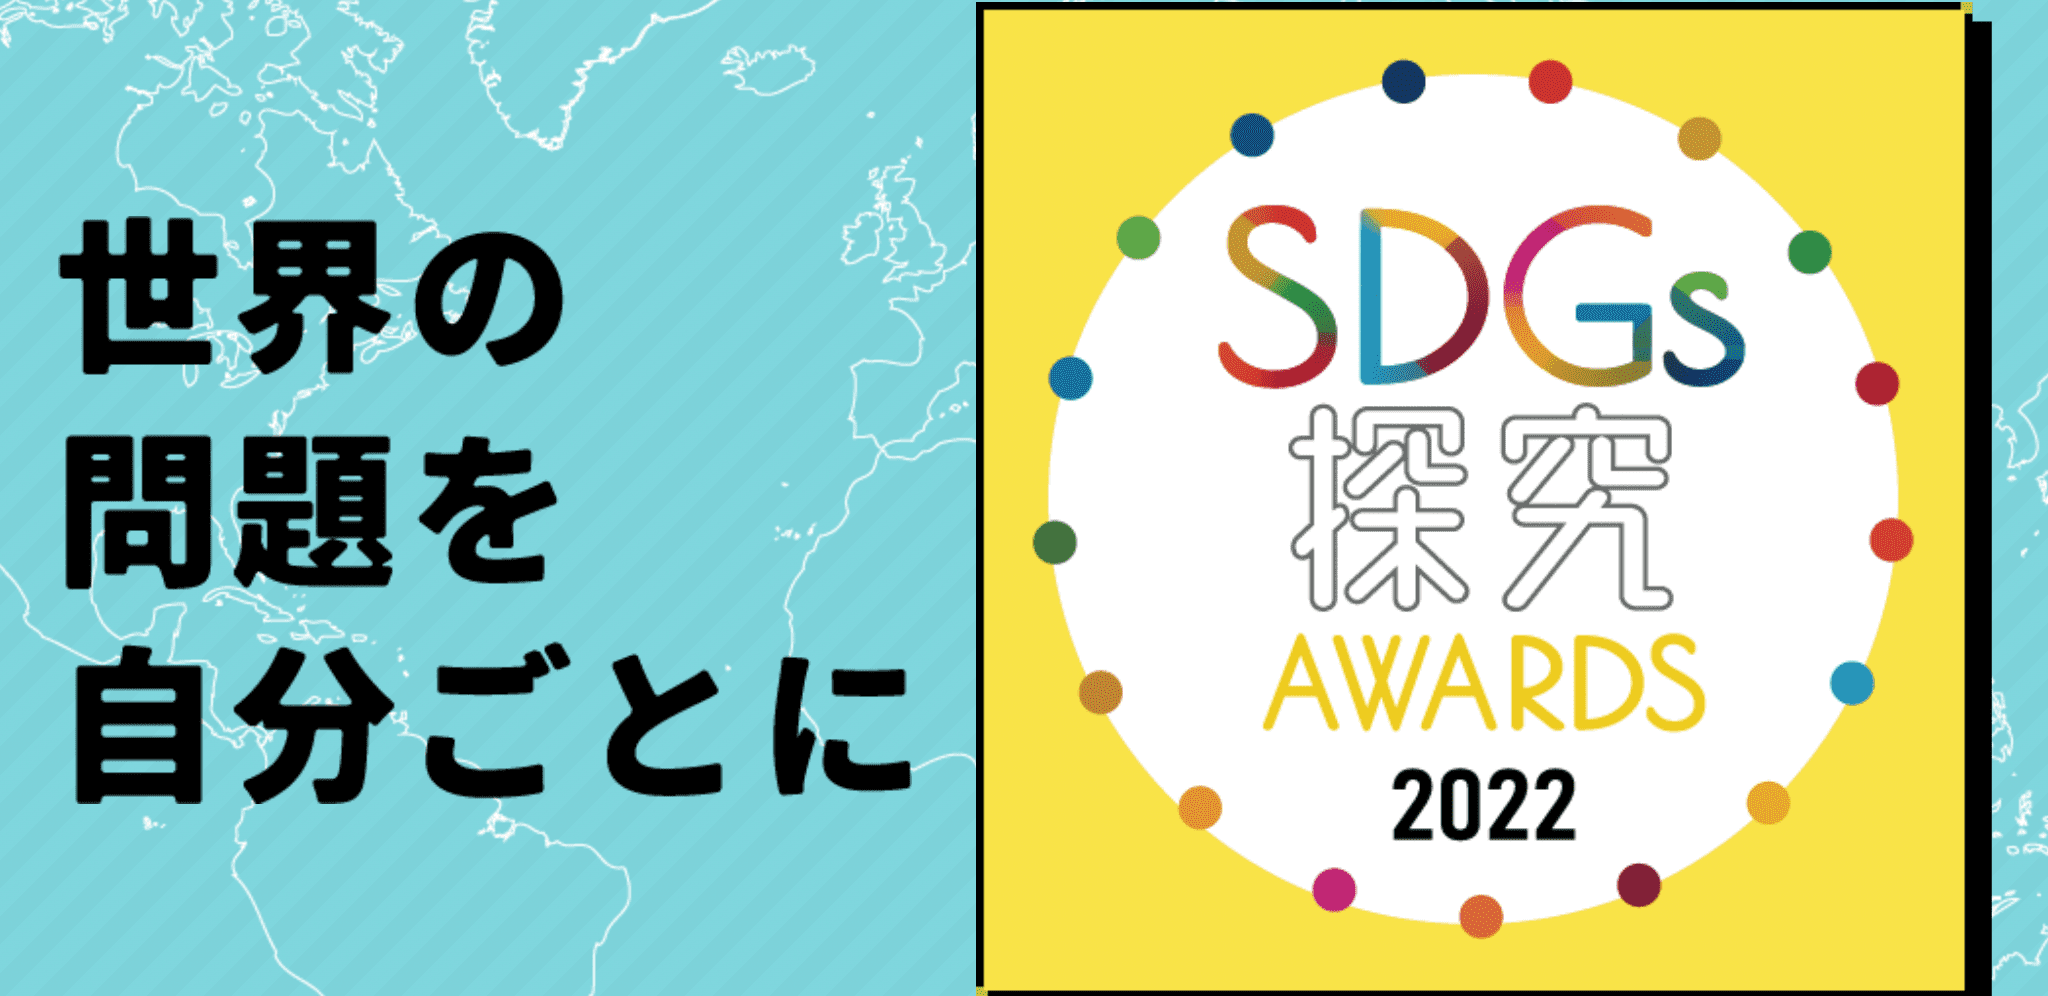 SDGs探究AWARDS 2022